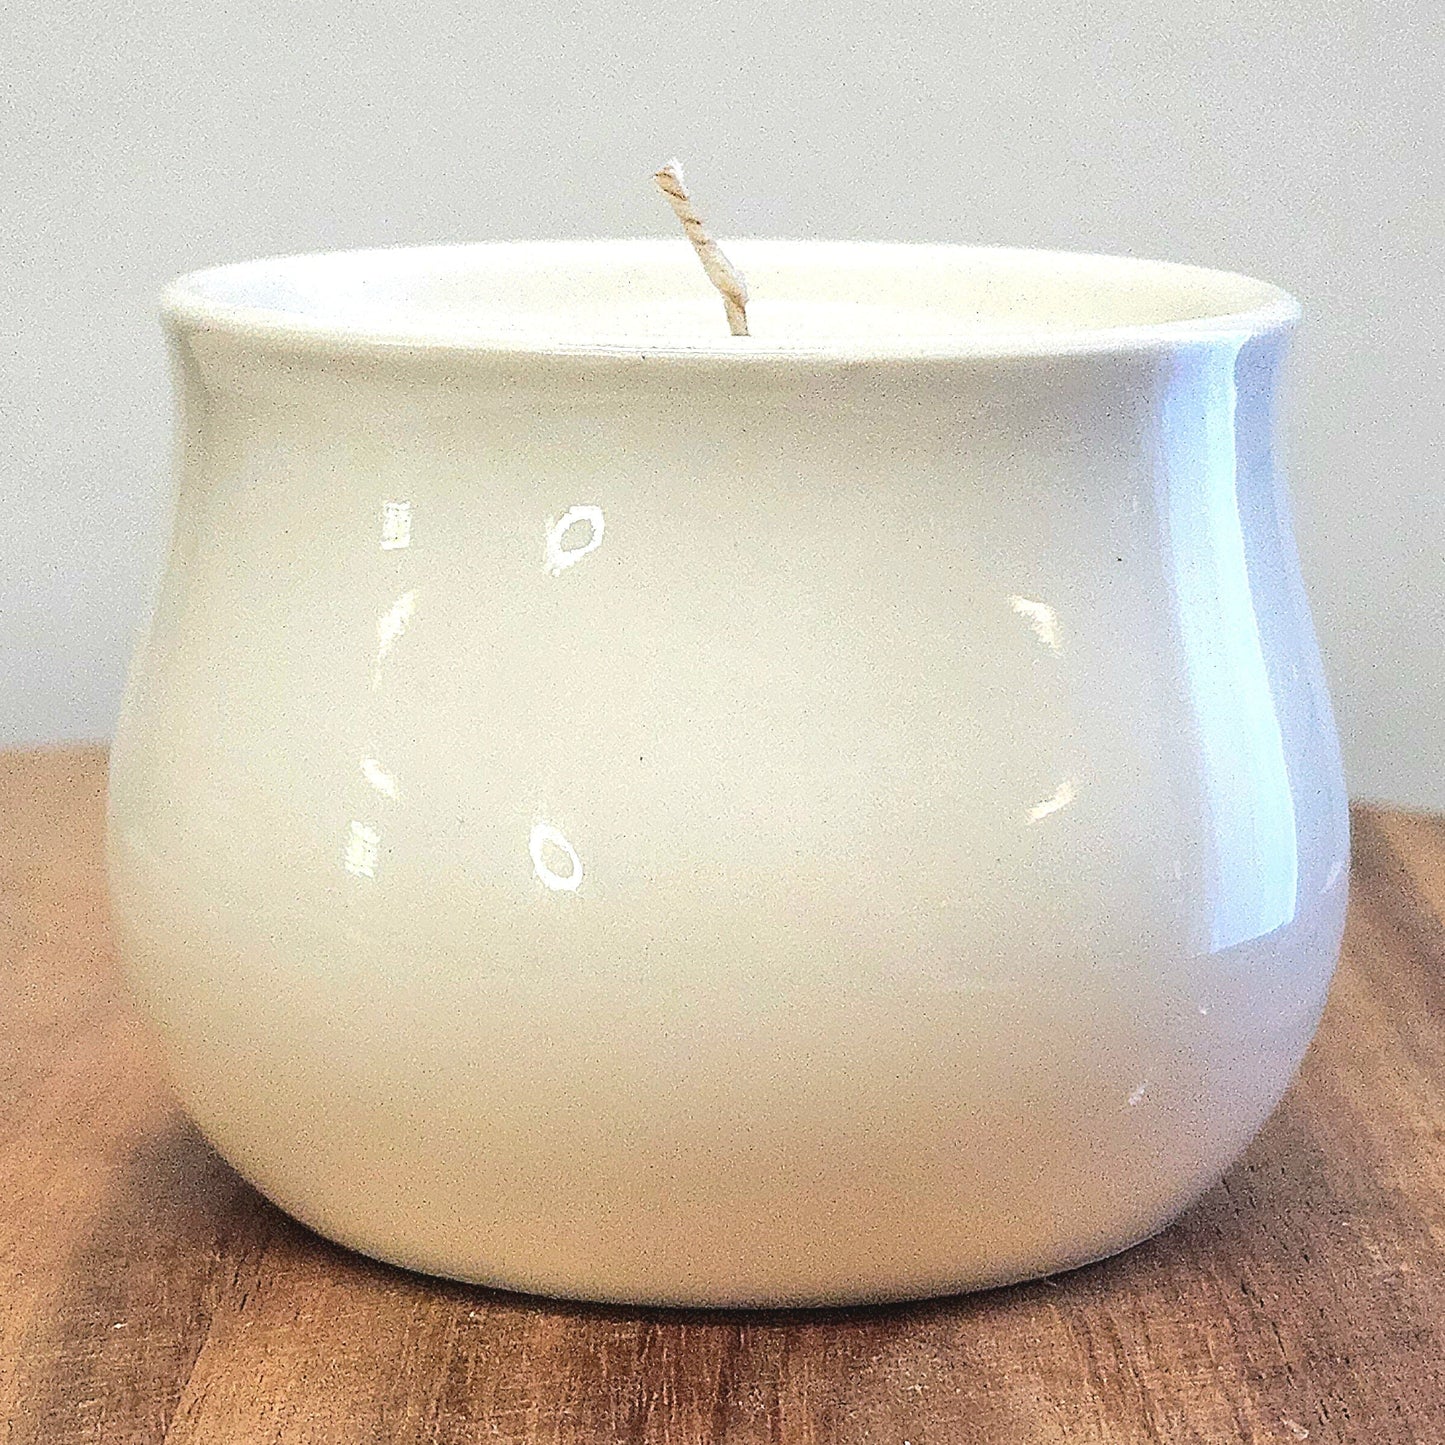 Lavender Patchouli Succulent Pot Safe Fragrance Oil Coconut Wax 3 oz Candle